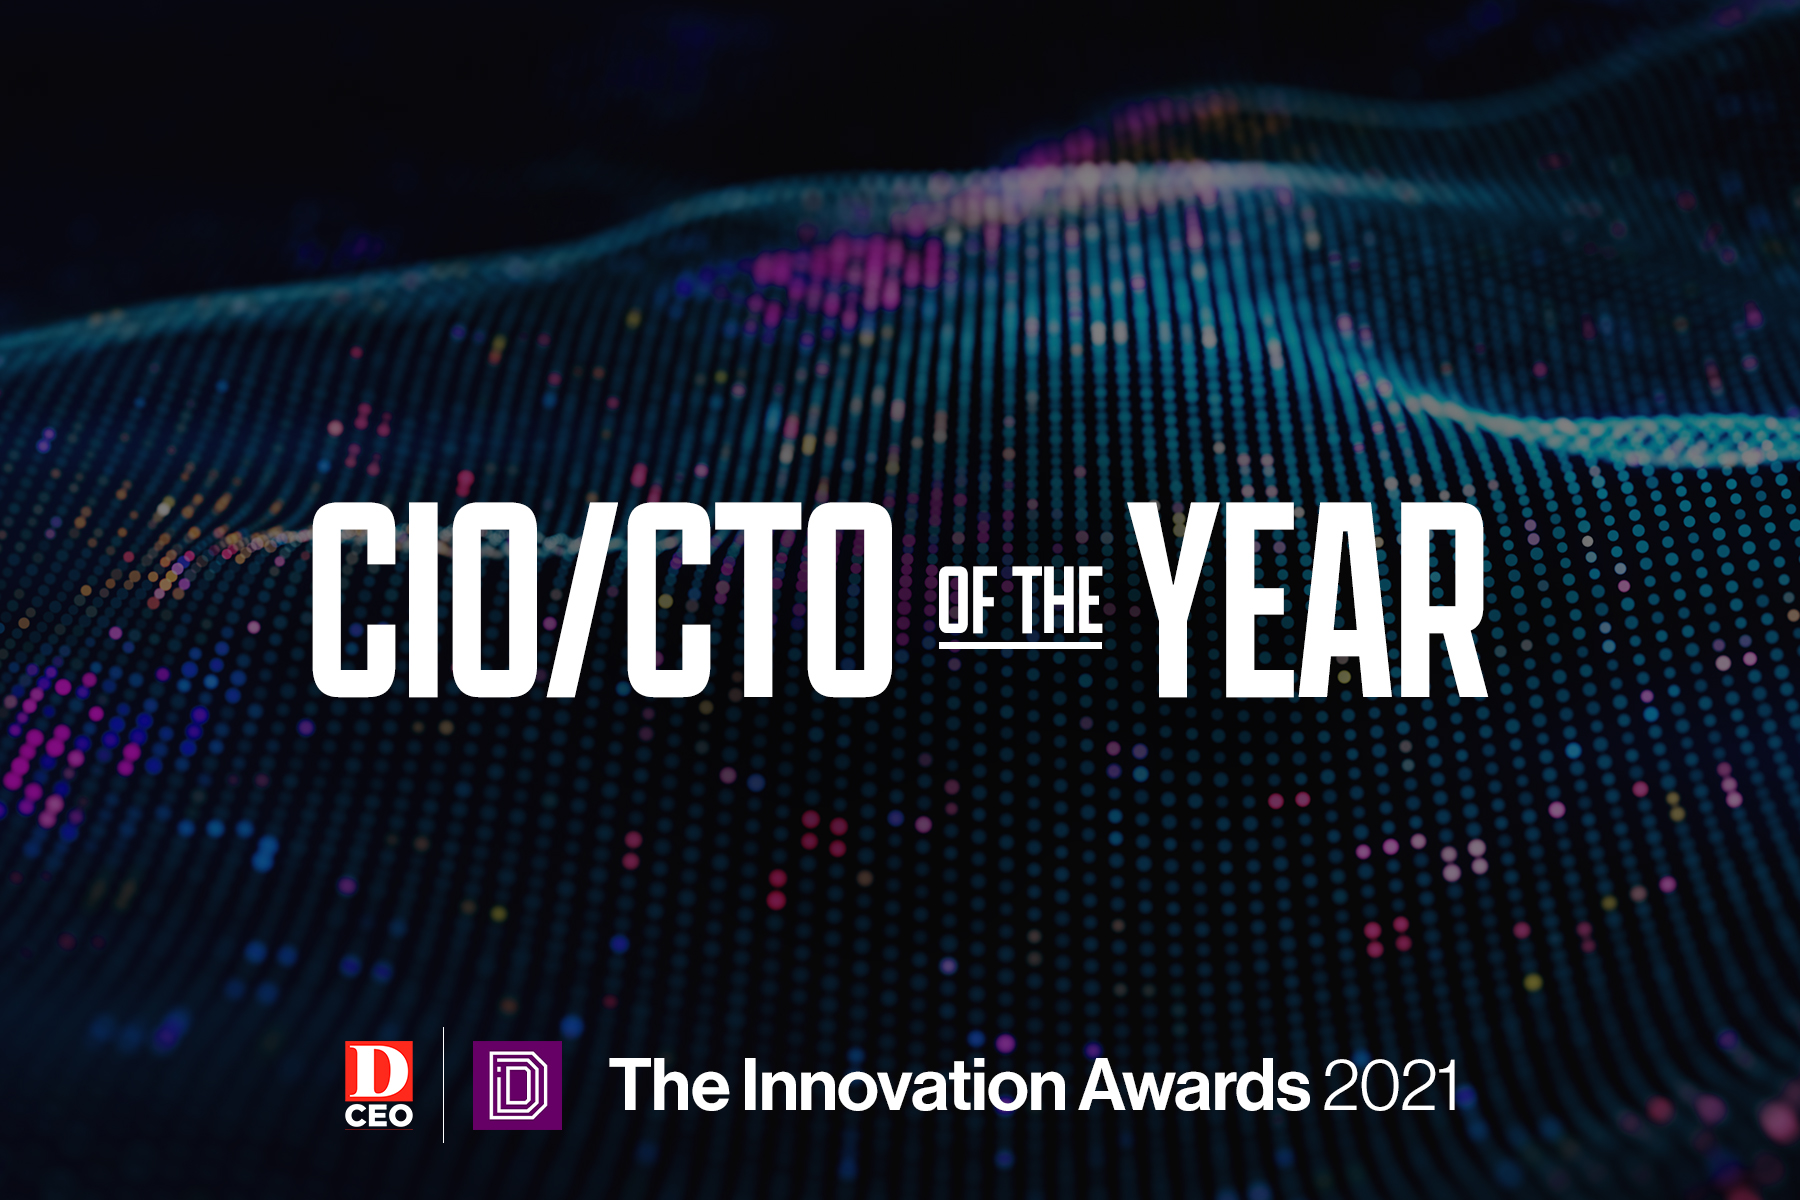 The Innovation Awards 2021 CIO/CTO art